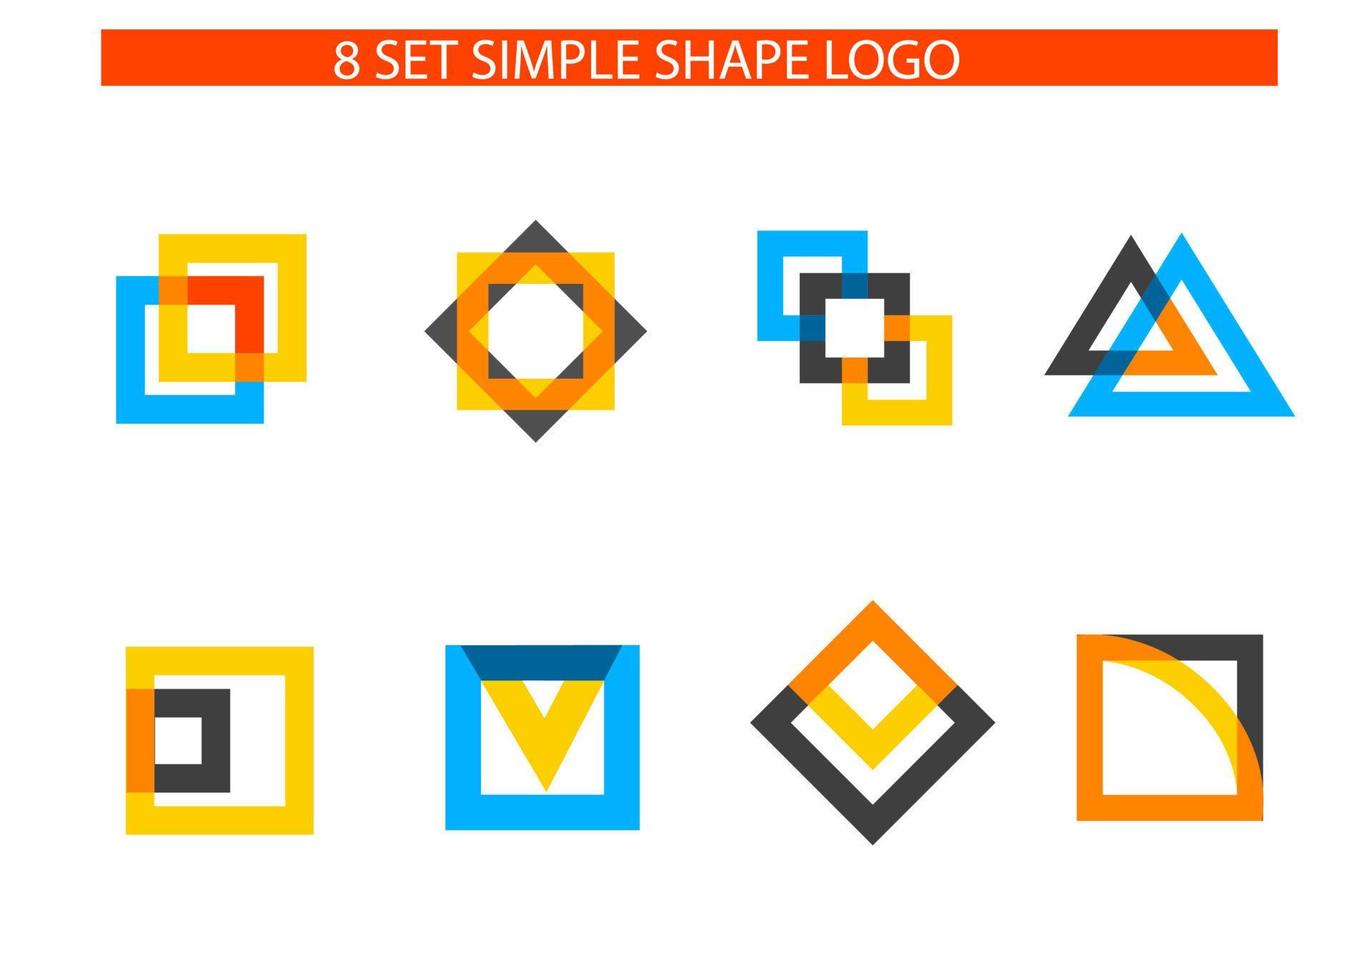 neues konzept einfache logoform für ihr unternehmen oder ihre marke mit starkem charakter vektor